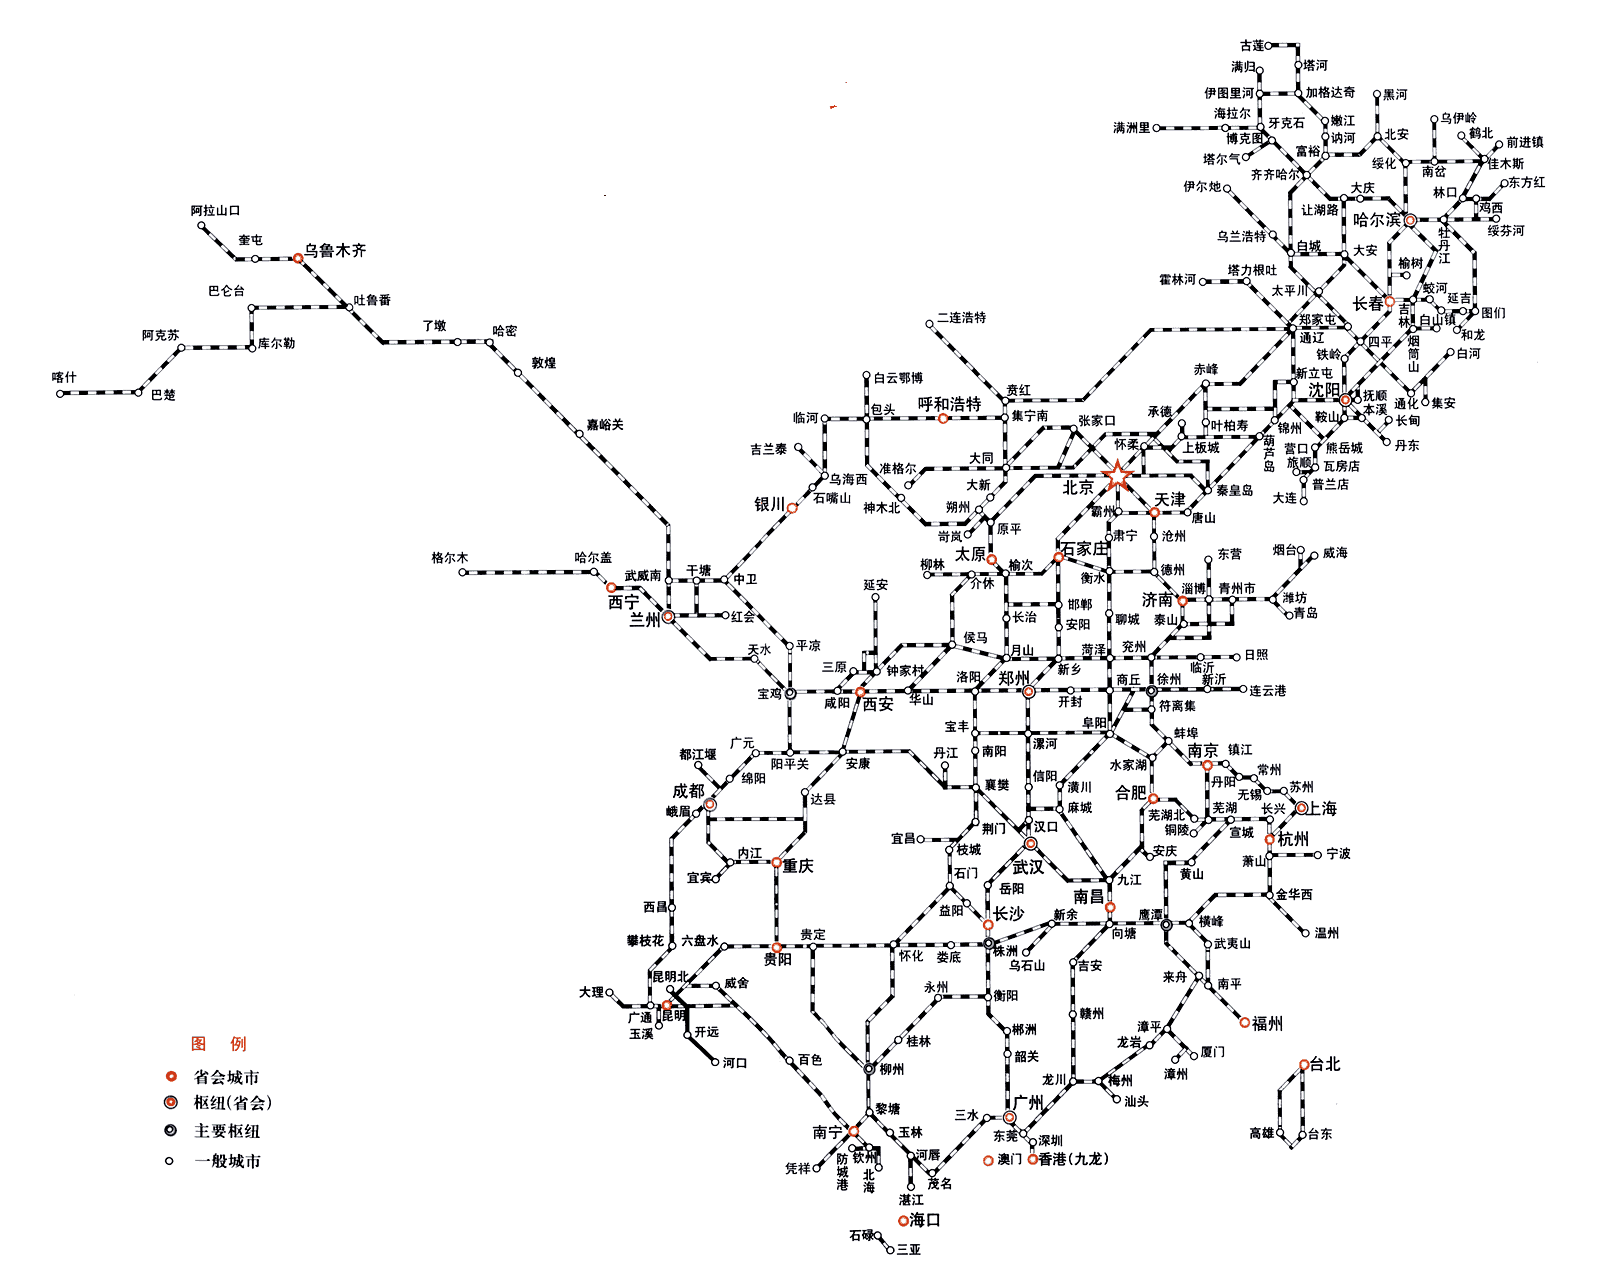 路网密度的铁路（铁路路网）